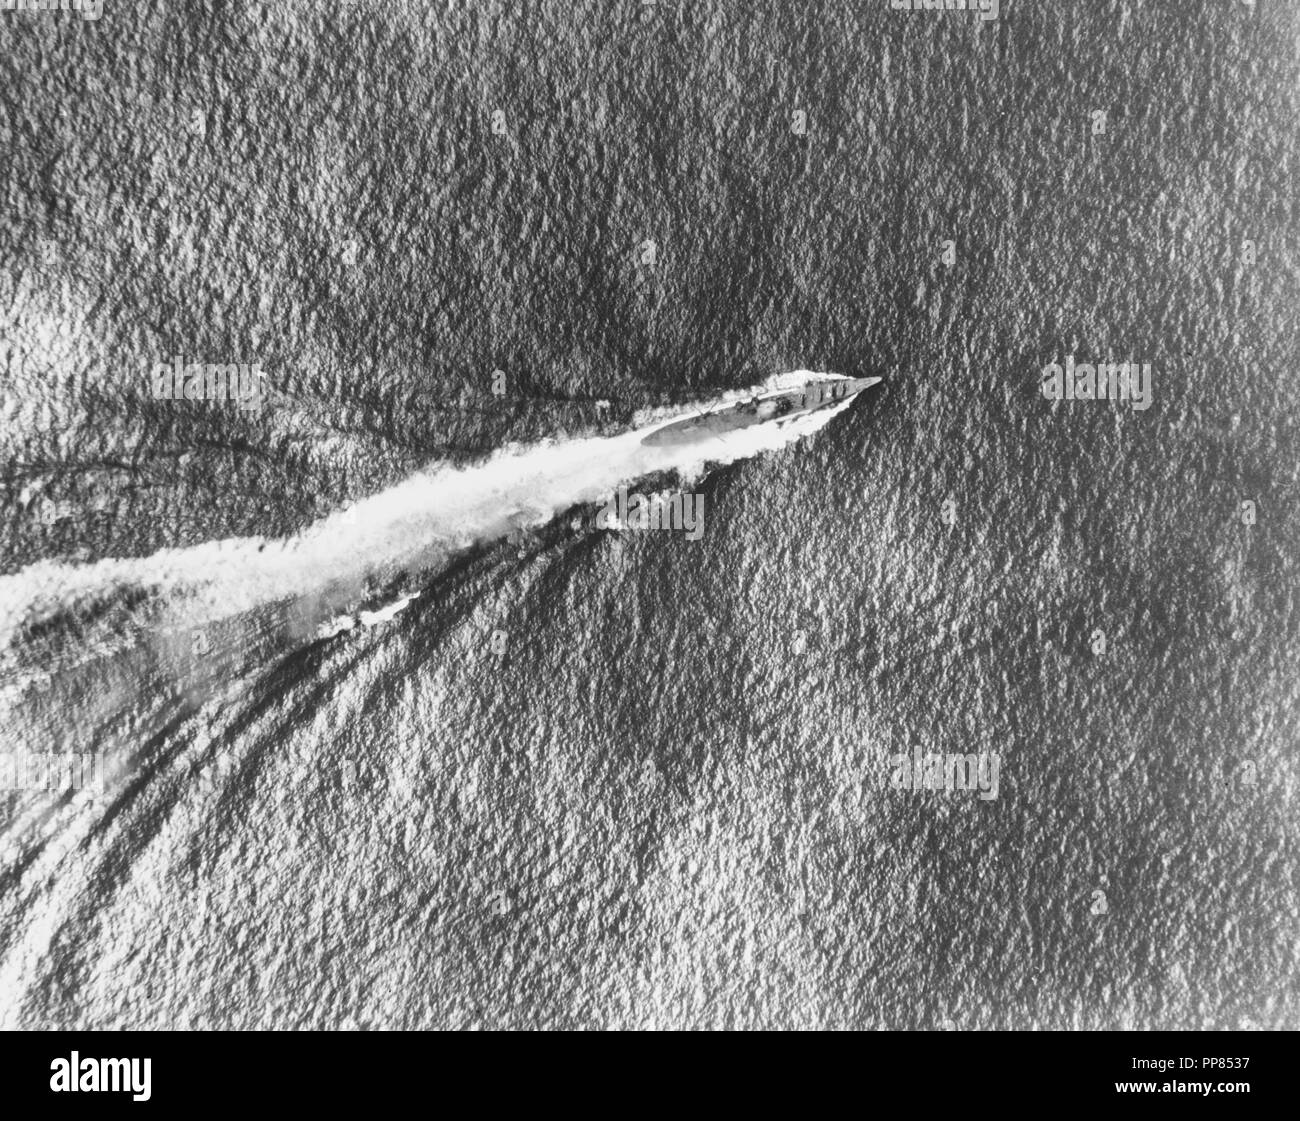 Schlacht von den Santa Cruz Inseln, Oktober 1942 - Japanische schwere Kreuzer Chikuma unterwegs während der Schlacht, wie von der USS Enterprise (CV-6) Flugzeuge, 26. Oktober 1942 gesehen. Hinweis Rauch aus ihrem Brücke, die von einer Bombe getroffen wurde. Stockfoto